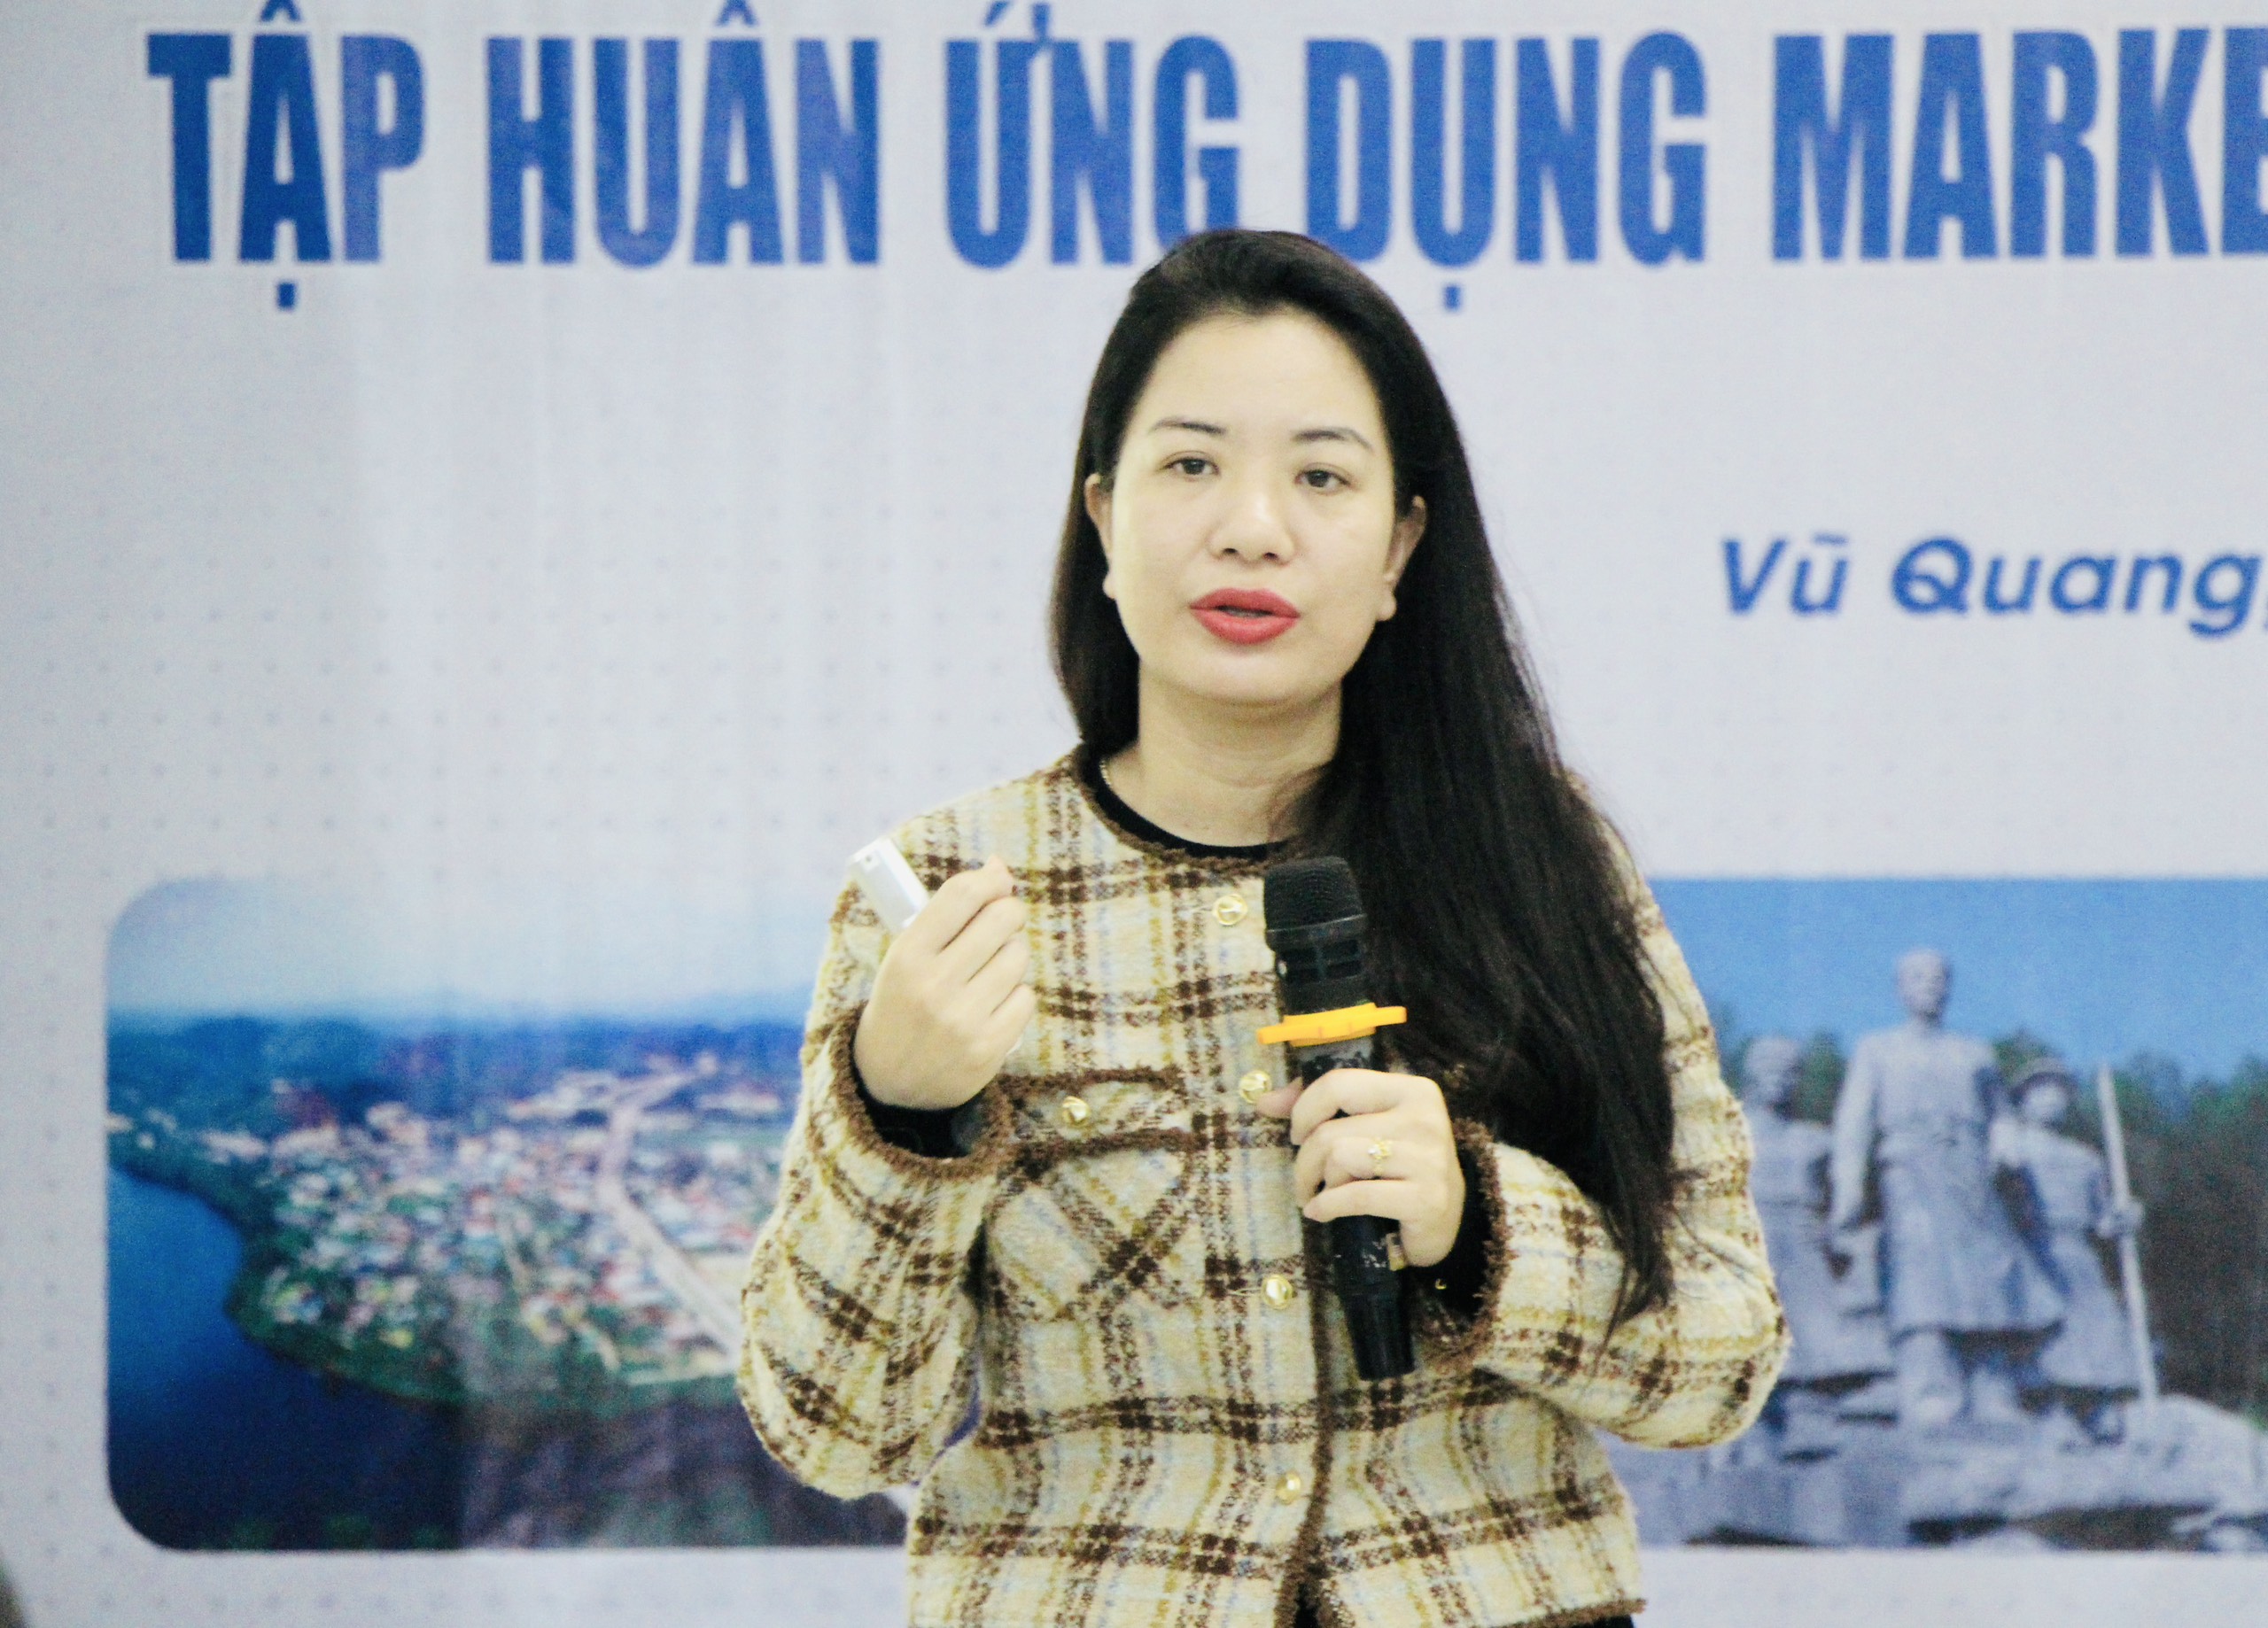 Vũ Quang triển khai tập huấn “Ứng dụng Marketing số trong du lịch”